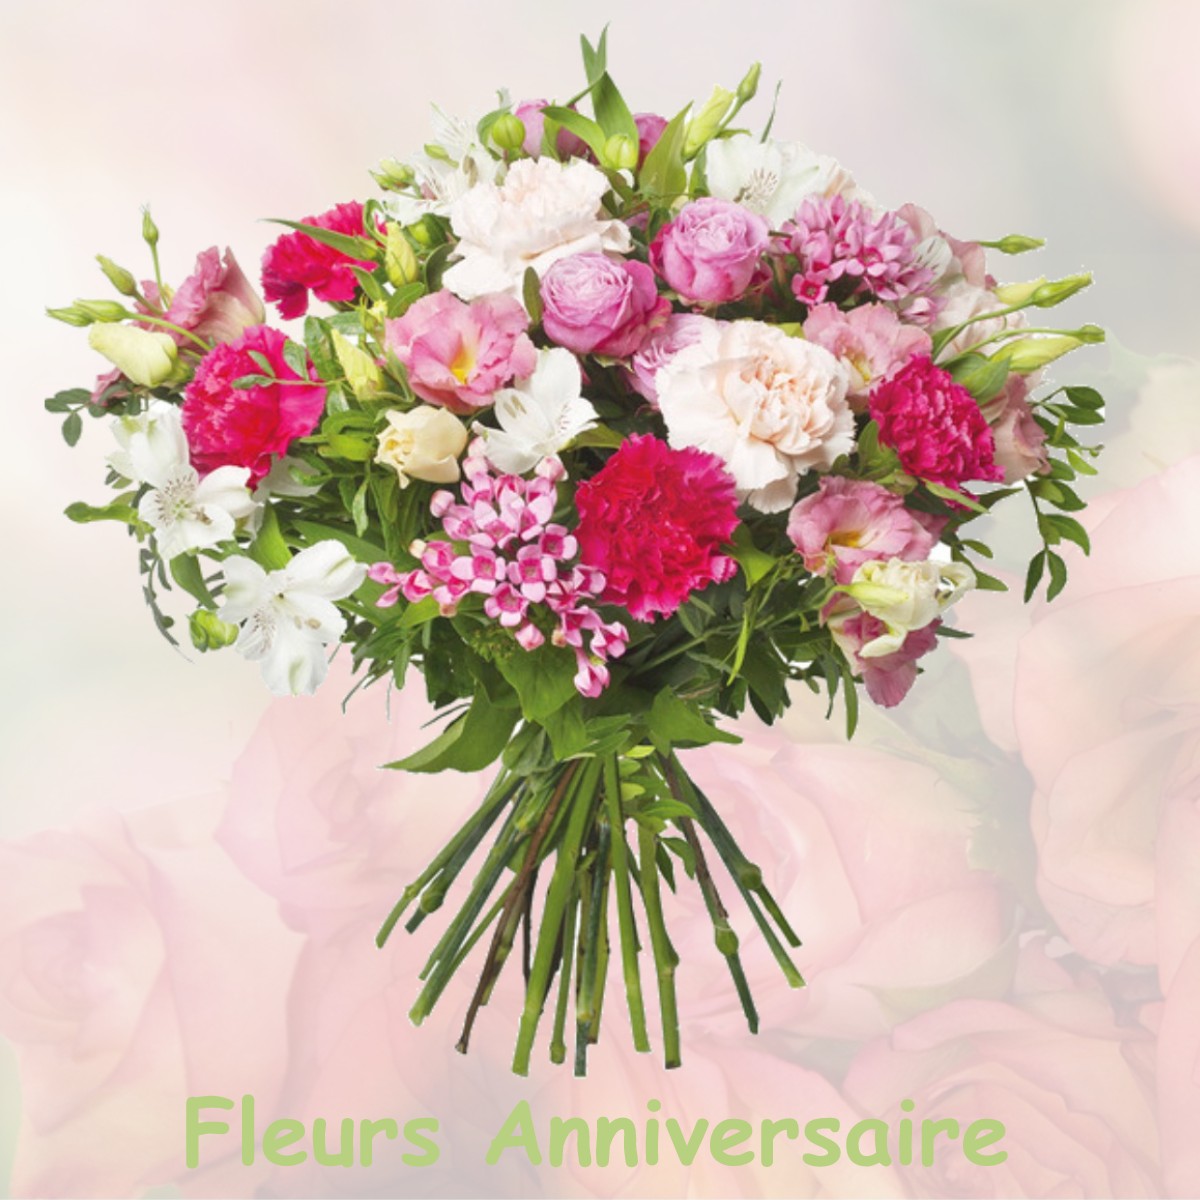 fleurs anniversaire VILLEDIEU-LES-BAILLEUL